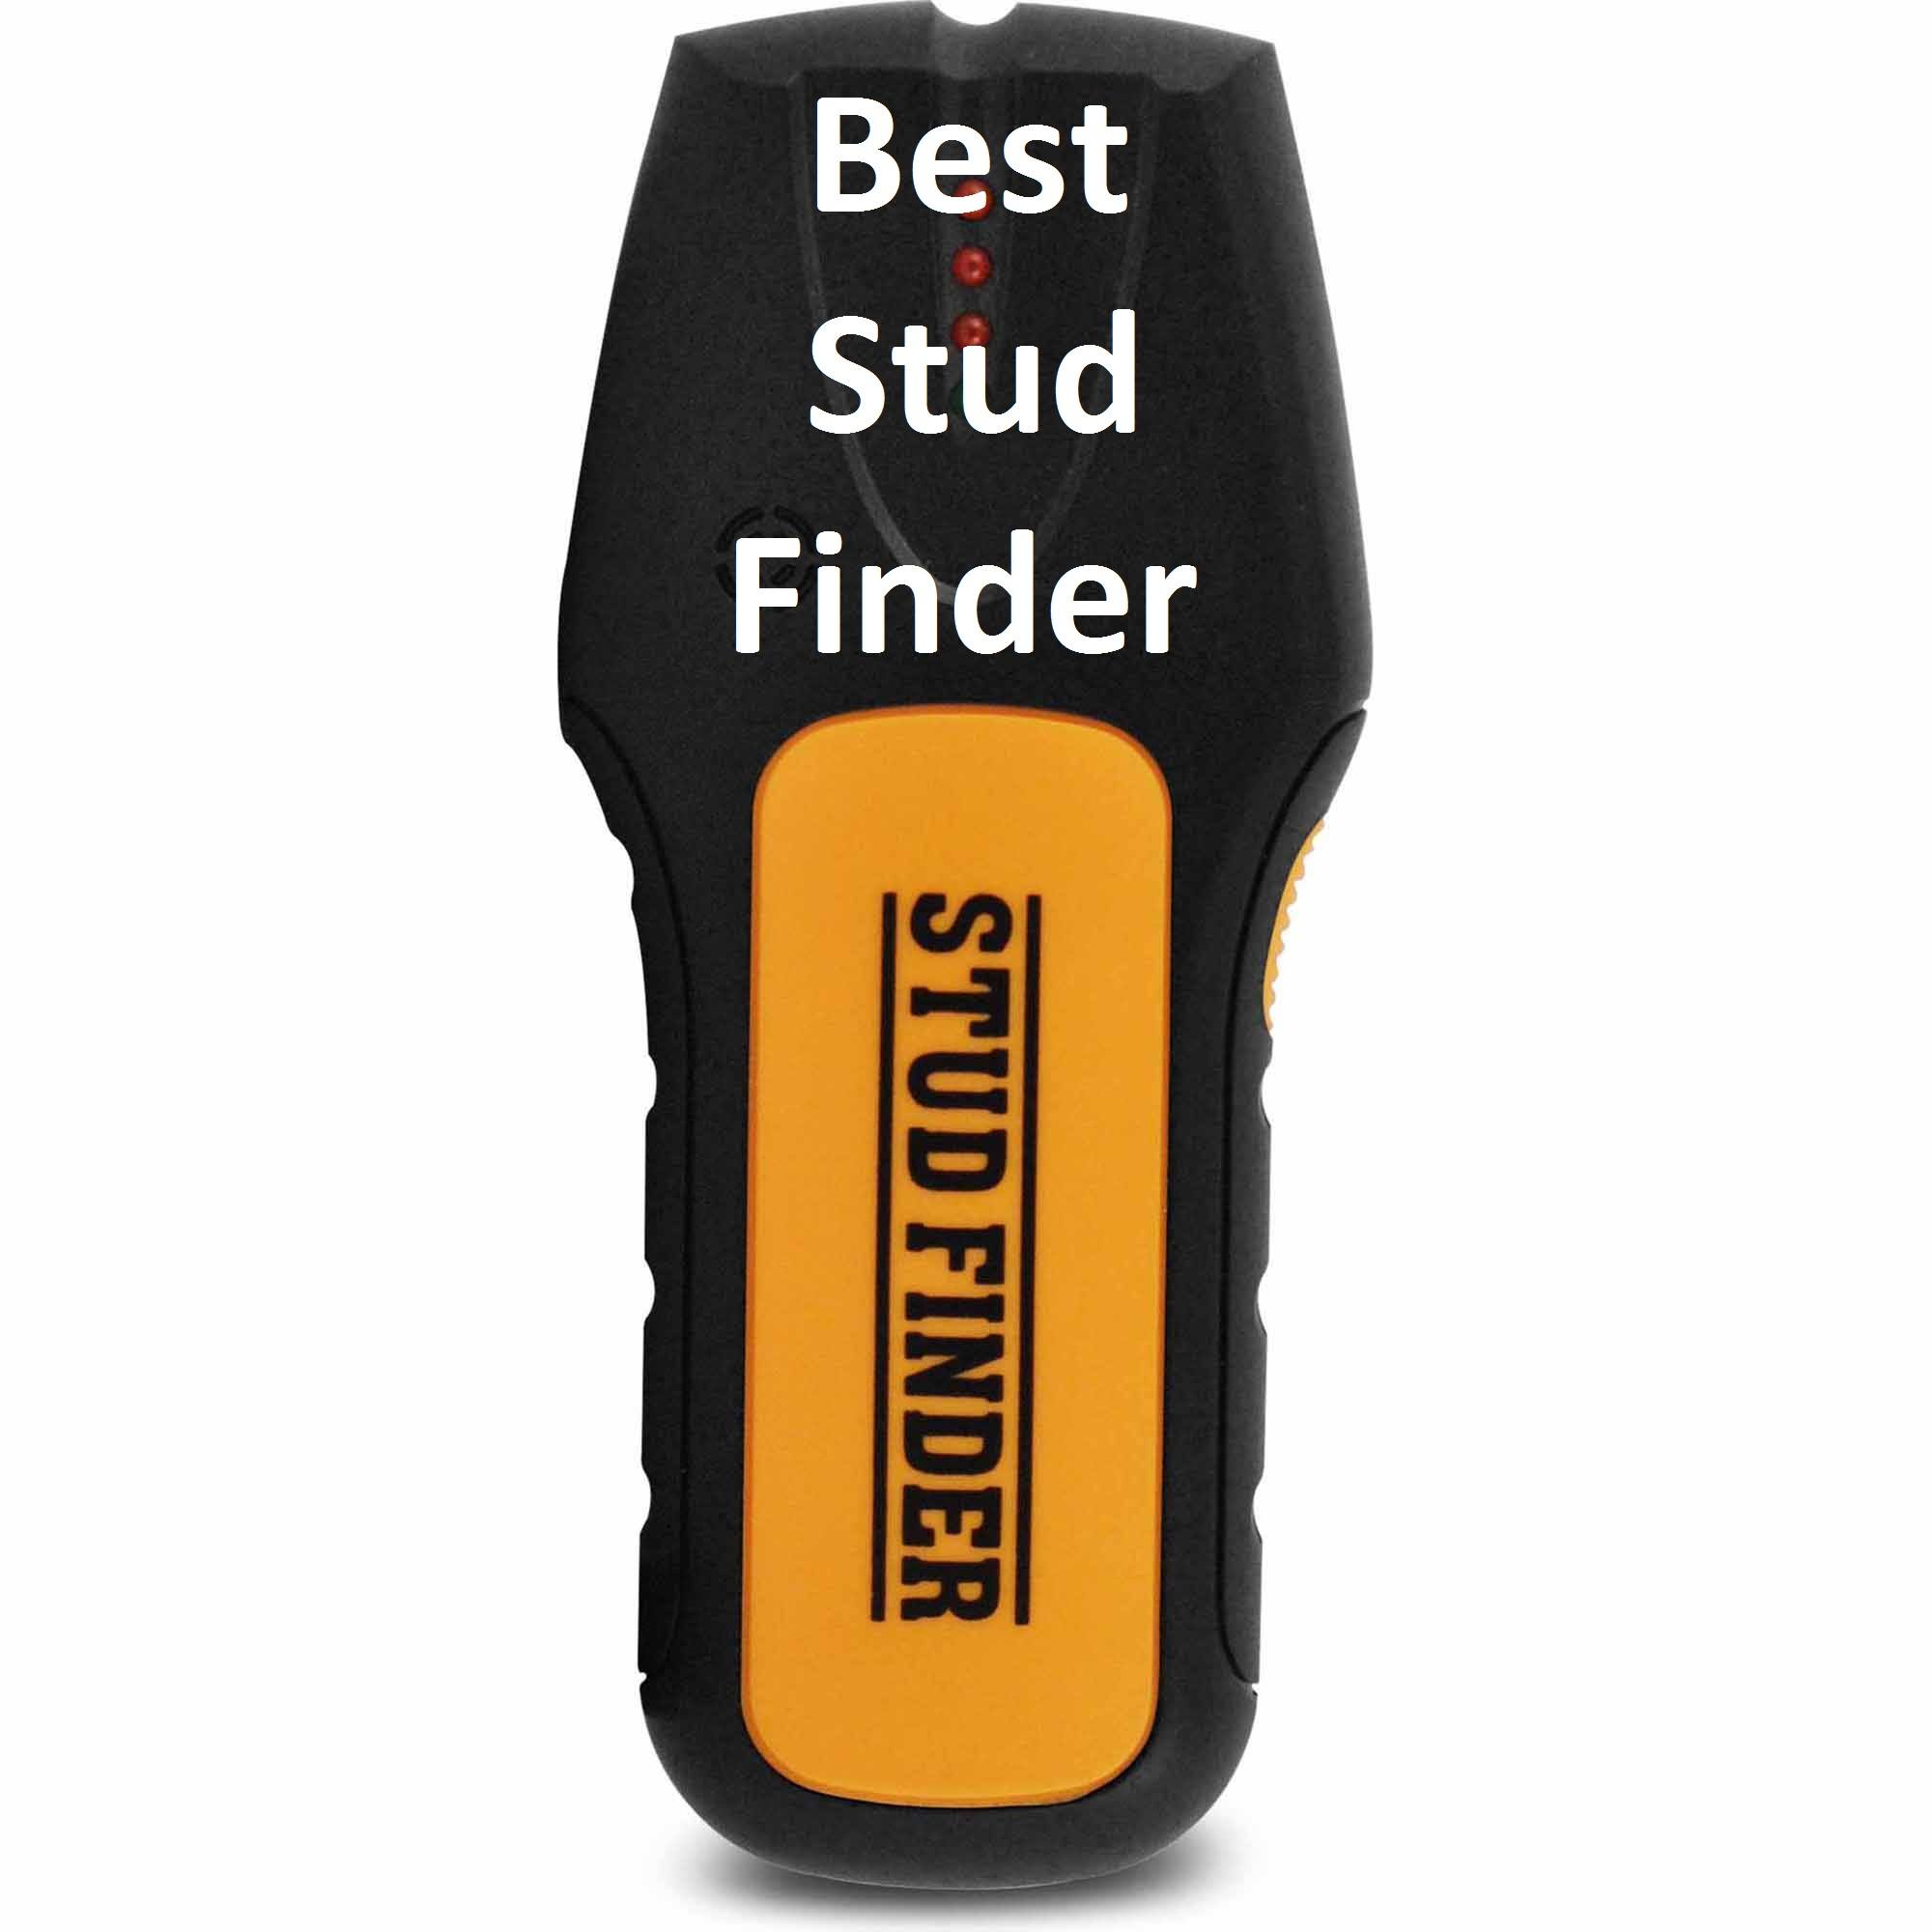 Best Stud Finder.